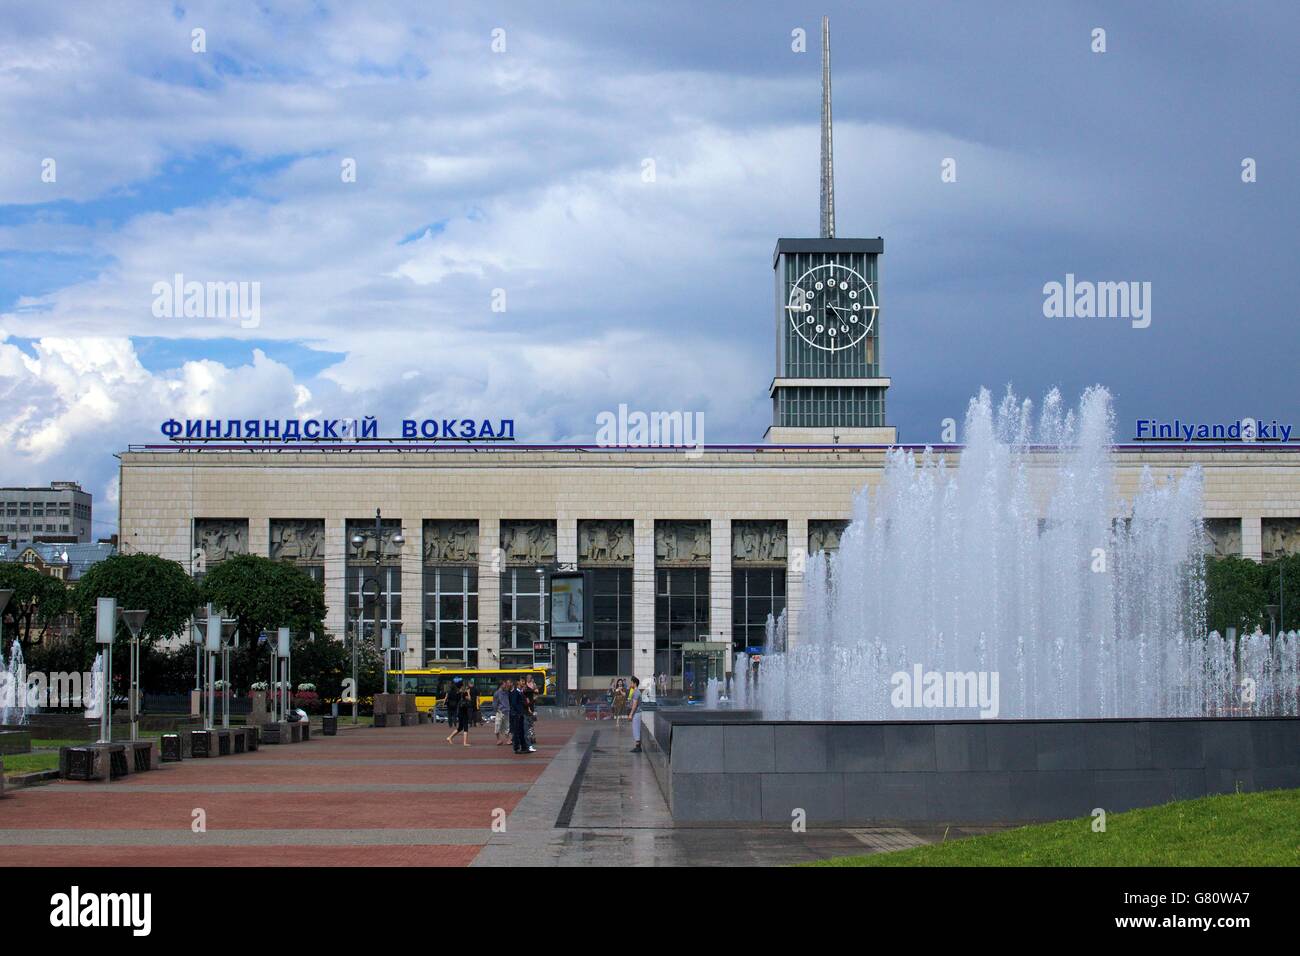 Finlyandskiy o Finlandia stazione ferroviaria, San Pietroburgo, Russia Foto Stock